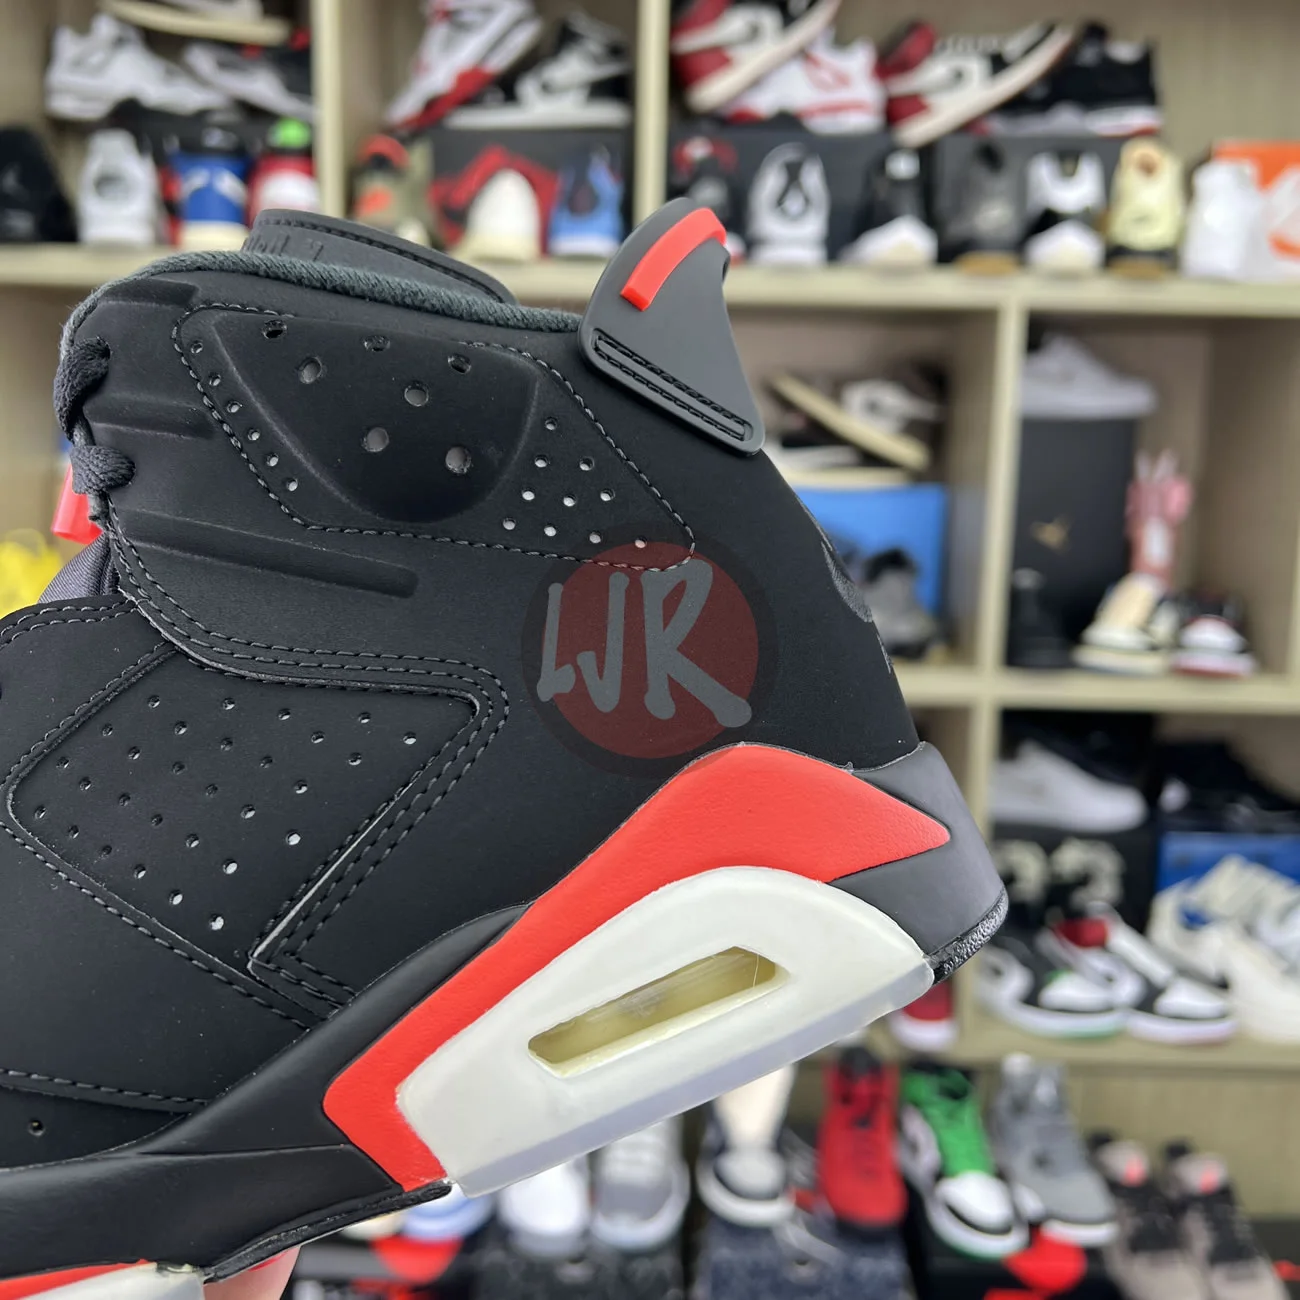 Air Jordan 6 Retro Black Infrared 2019 384664 060 Ljr Sneakers (6) - bc-ljr.com